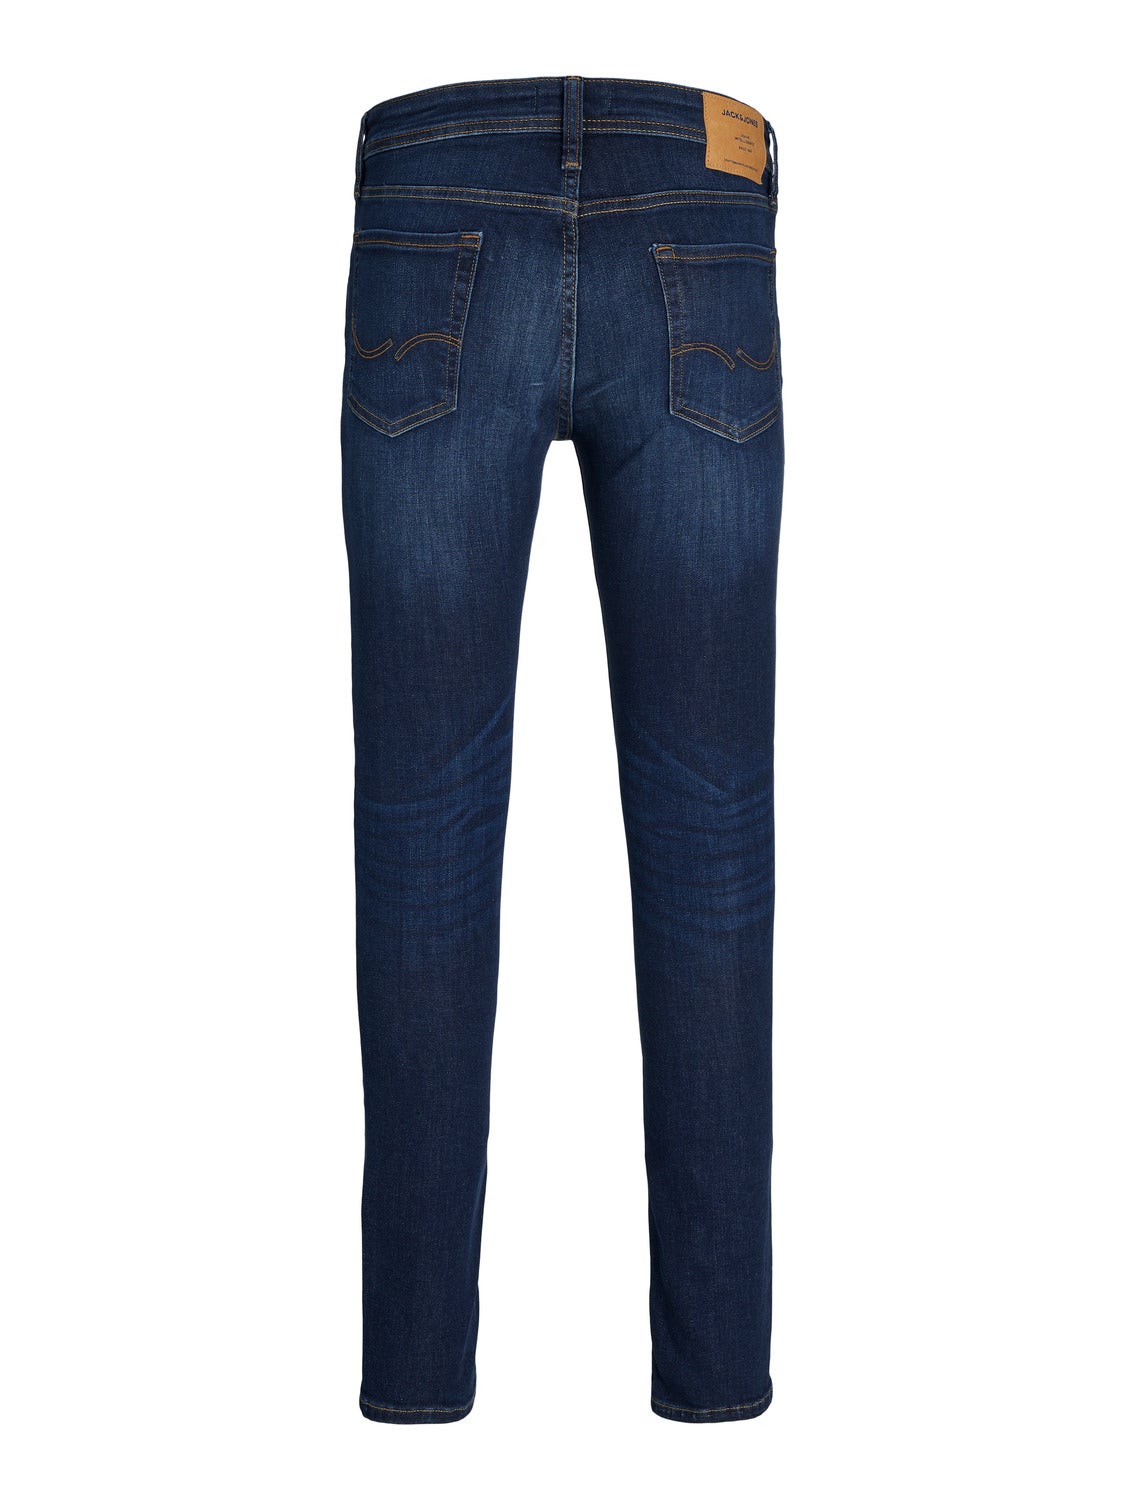 JACK & JONES Slim Men Blue Jeans - Buy JACK & JONES Slim Men Blue Jeans  Online at Best Prices in India | Flipkart.com